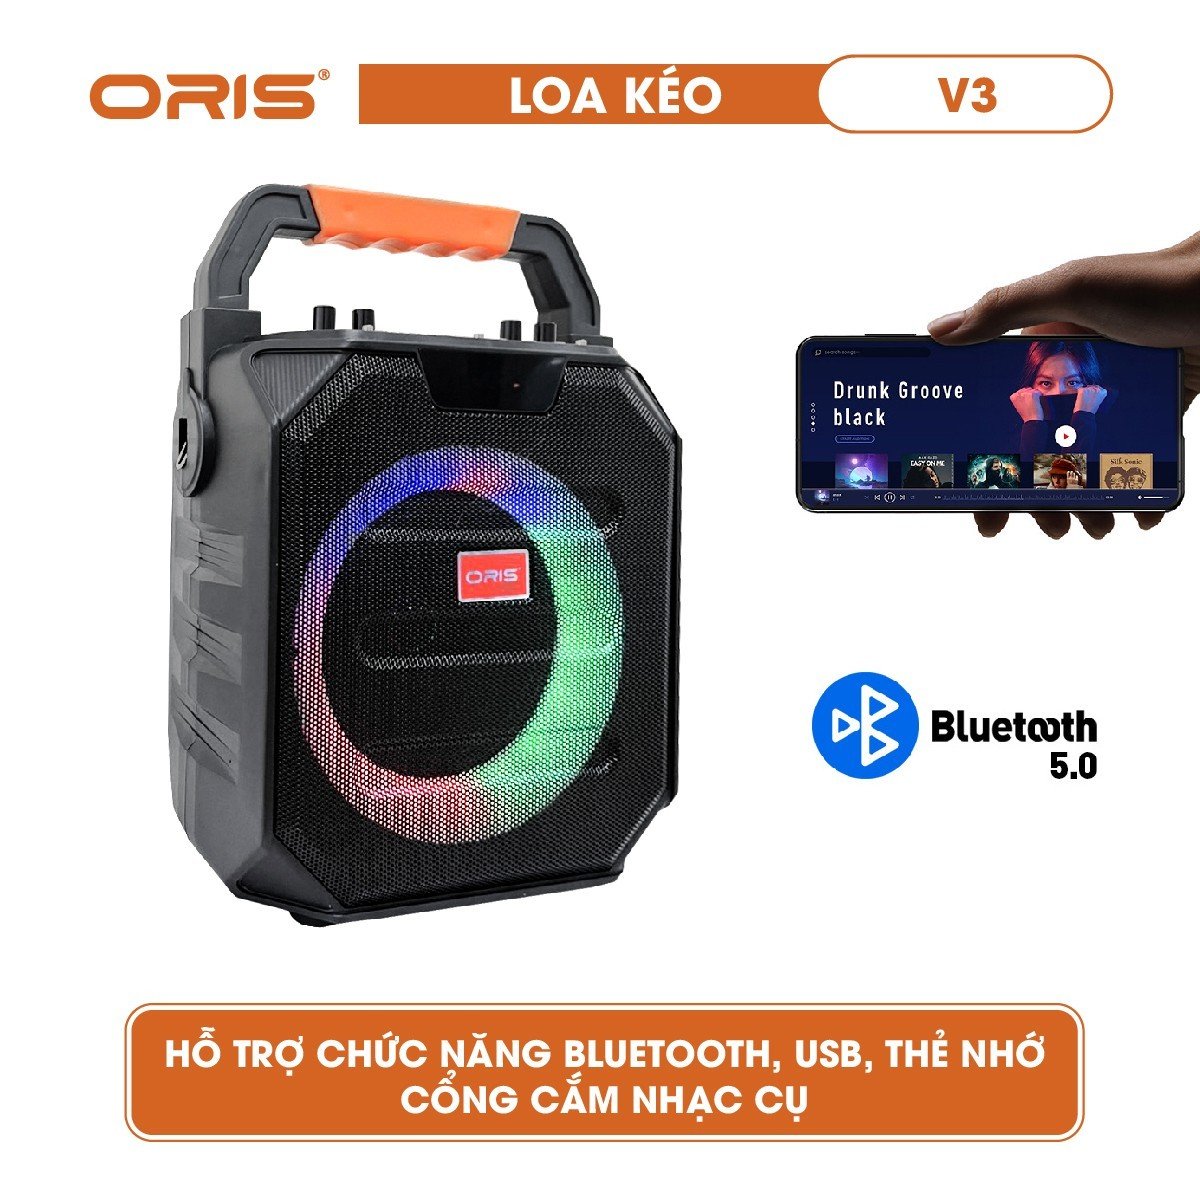 Loa kéo mini công suất 100W ORIS V3, loa di động có đèn 7 màu nhấp nháy theo nhạc, tặng kèm 01 mic sóng UHF chất lượng